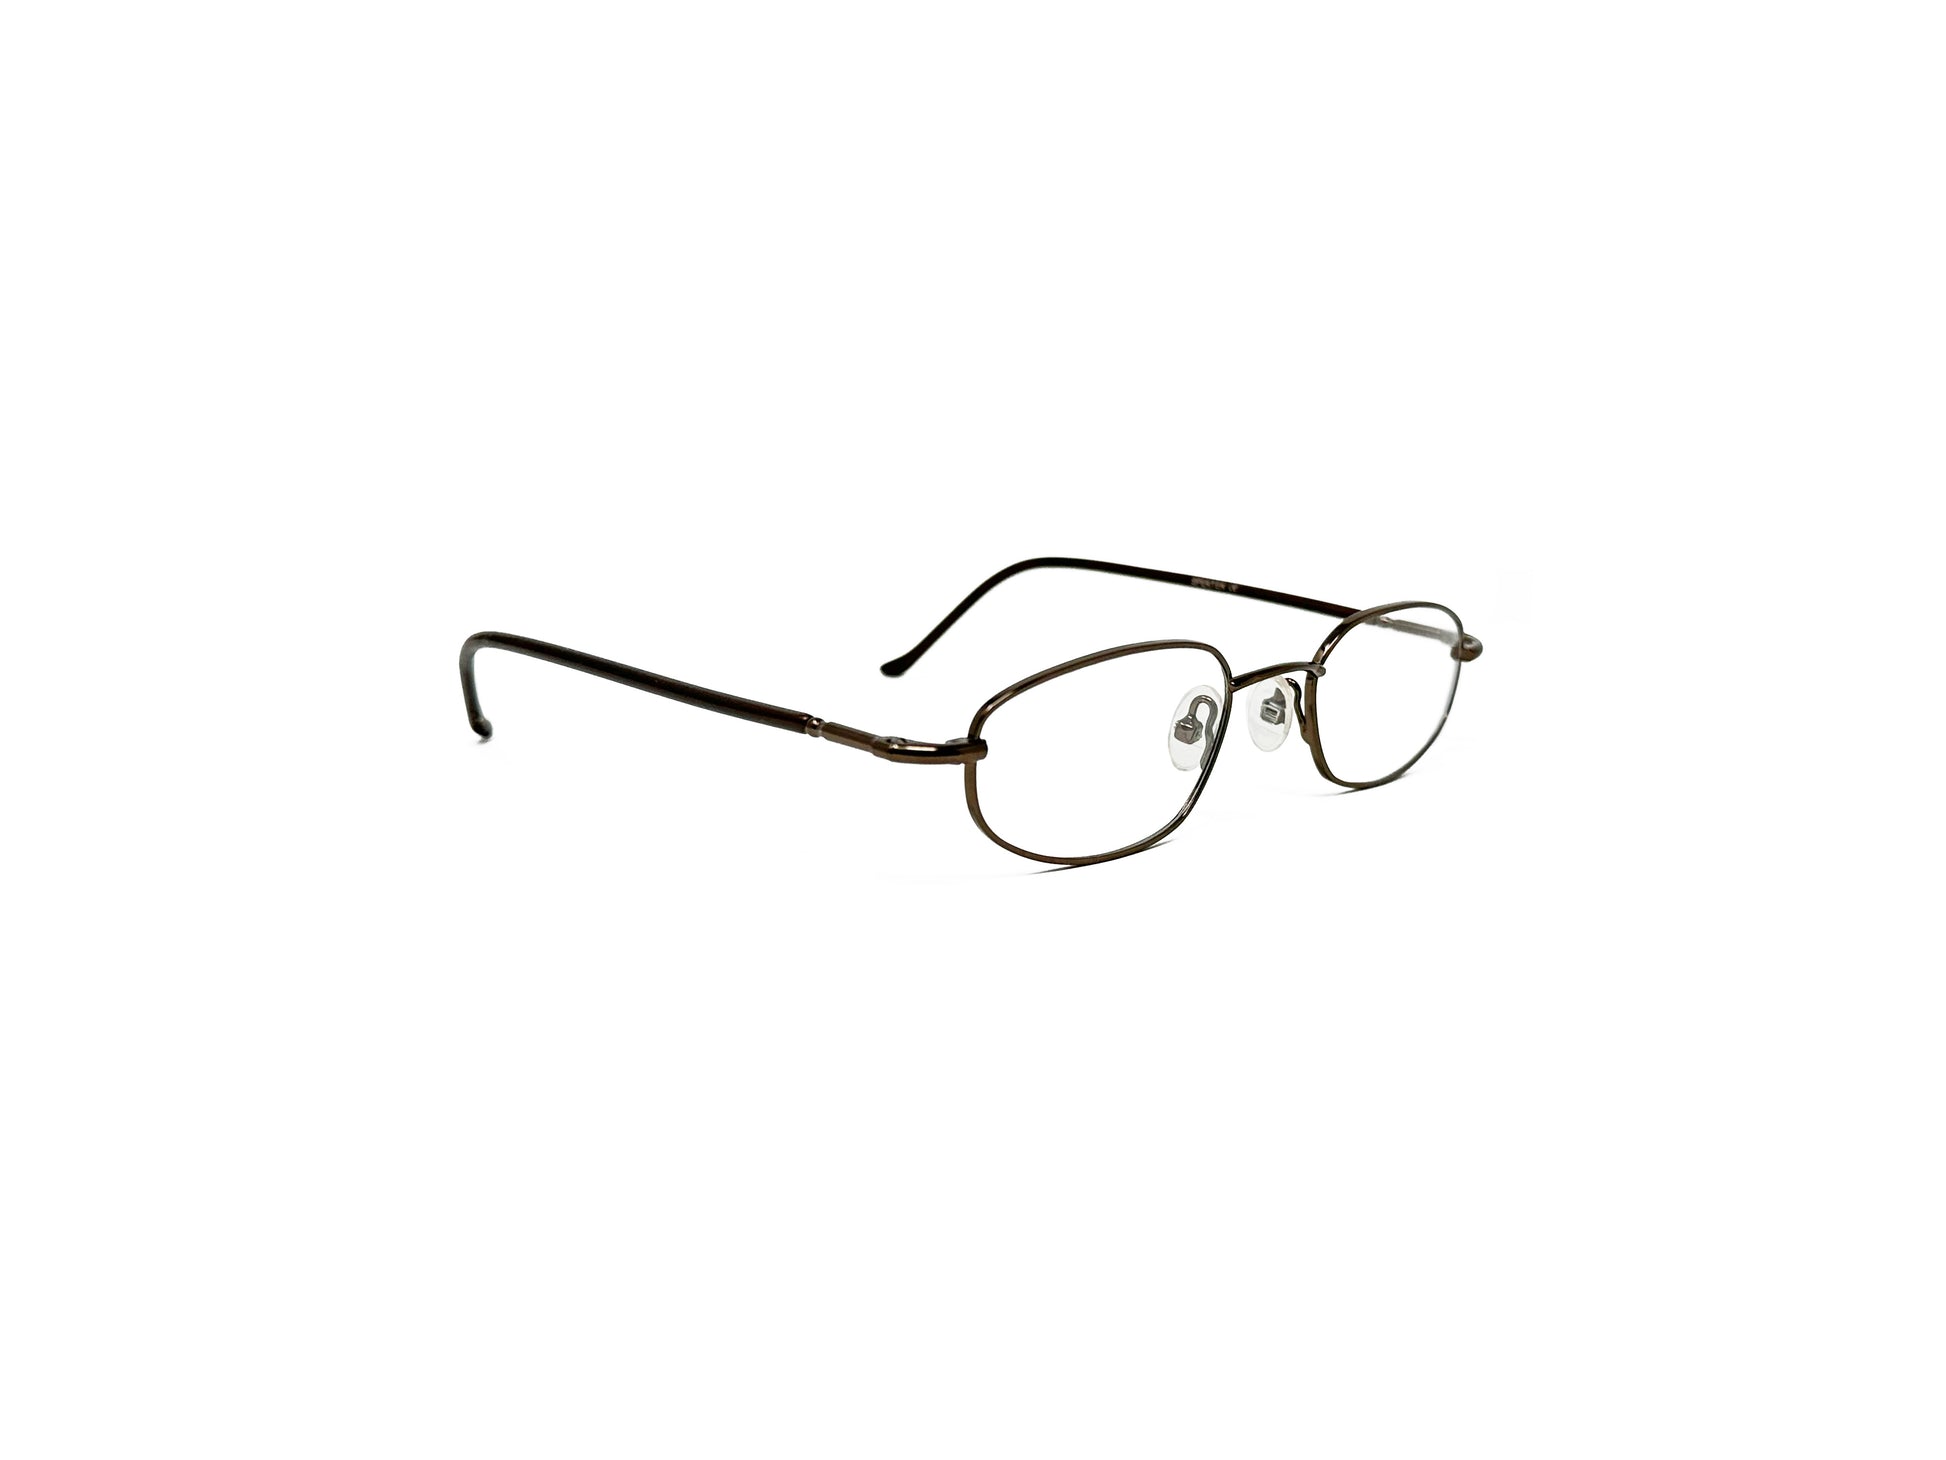 Spektek Eyewear angled oval optical frame. Model: 0537. Color: Brown. Side view.